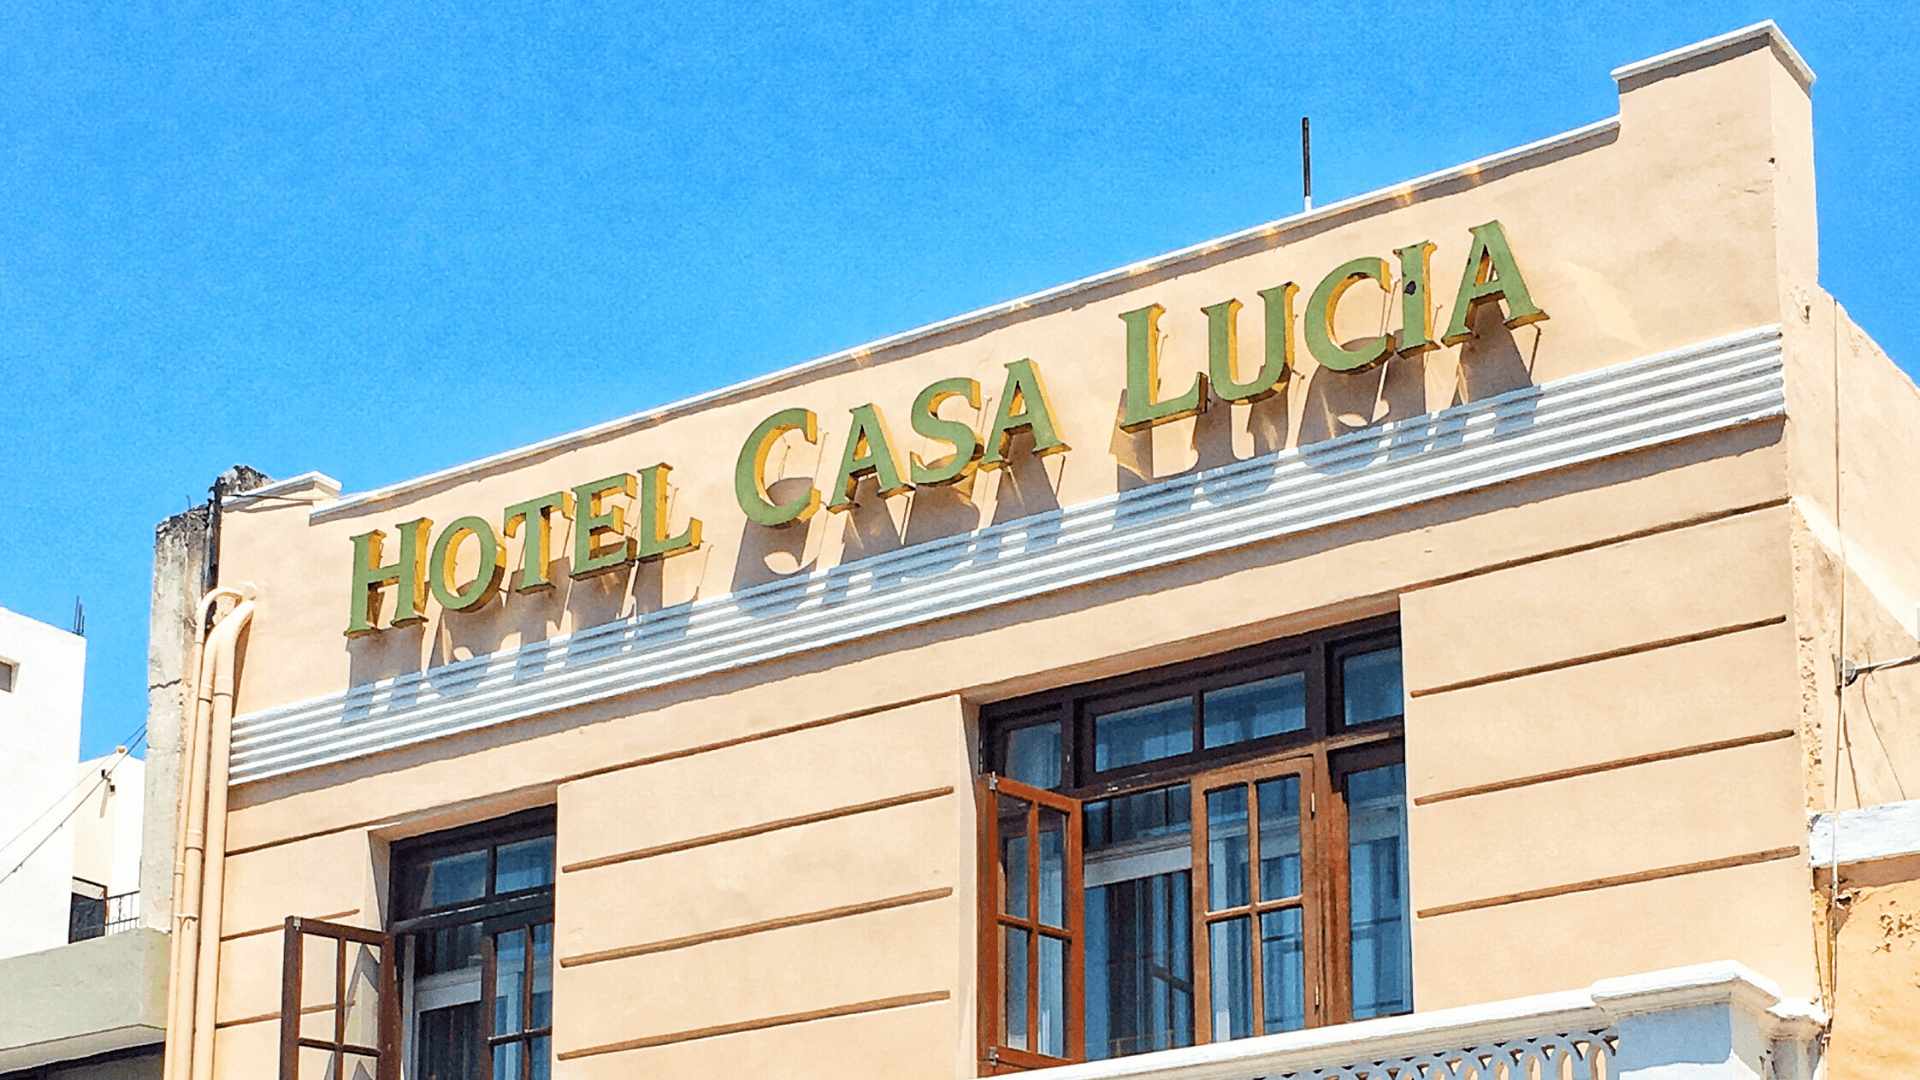 Hotel Casa Lucia in Santa Lucia Park in Merida Mexico